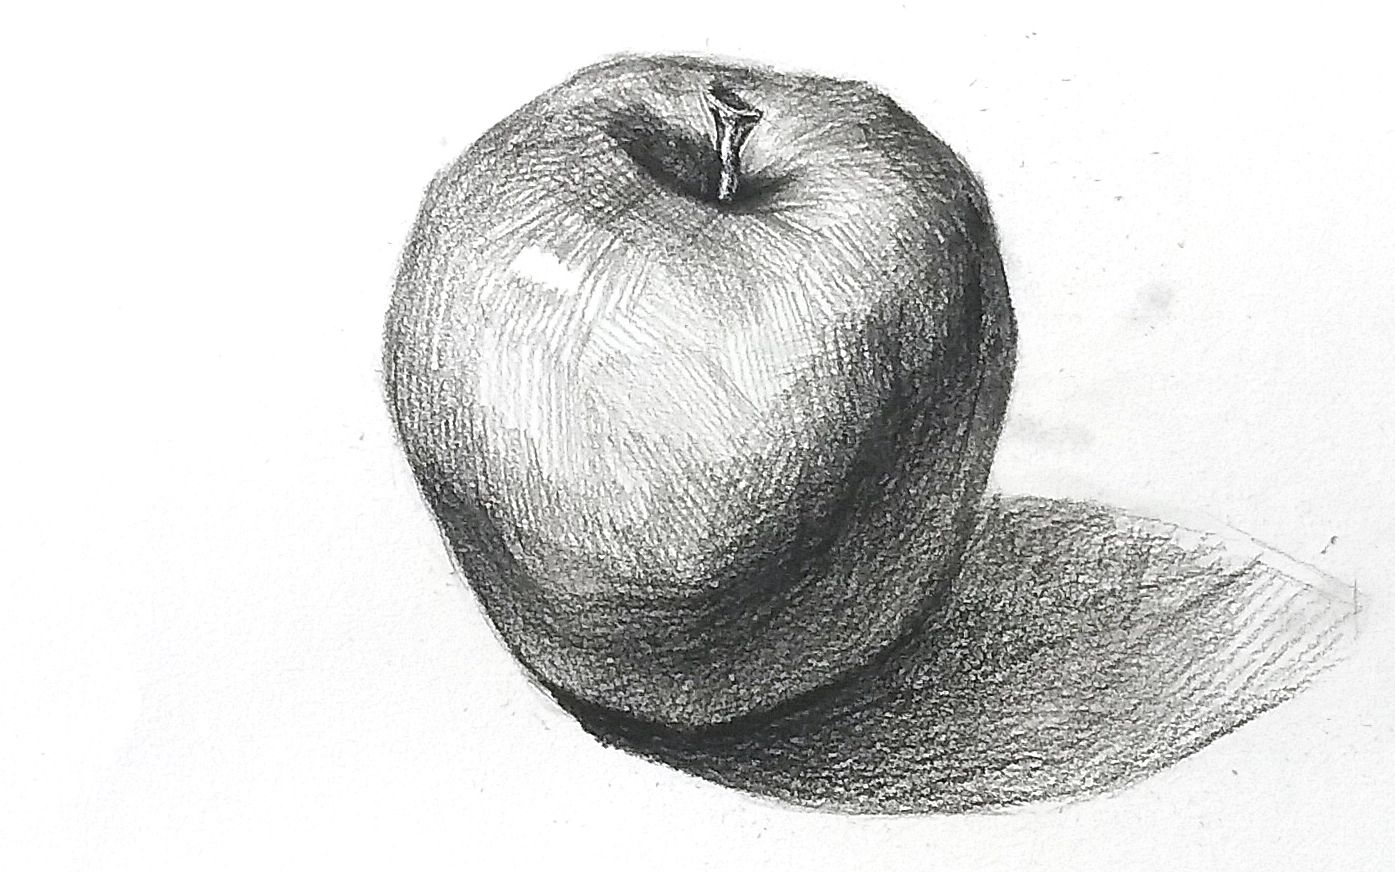 细致的描绘苹果图片